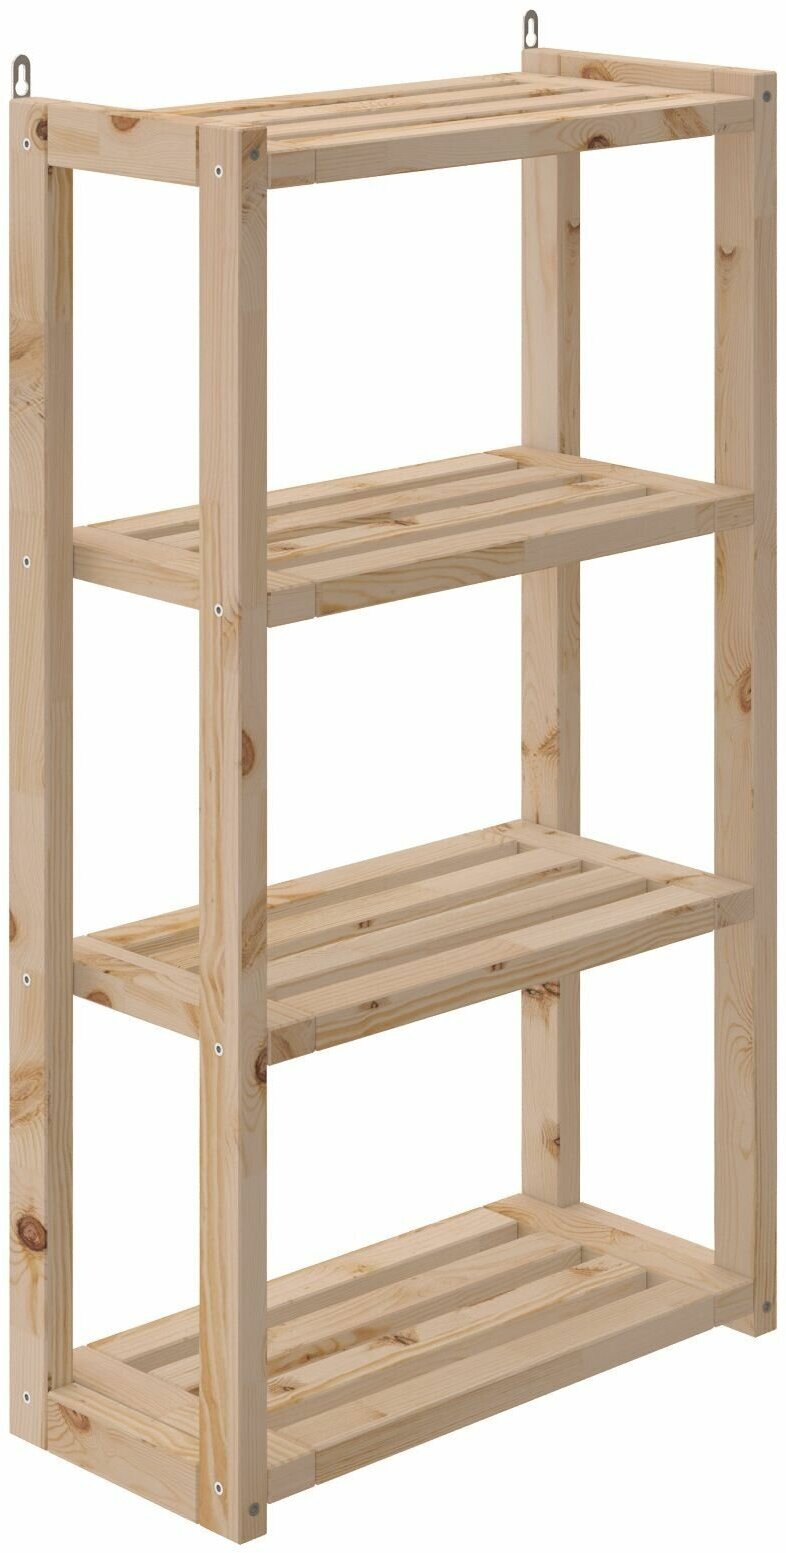 Стеллаж деревянный универсальный, 4 полки (88*50*23) см, этажерка из массива березы, DAIVA casa.